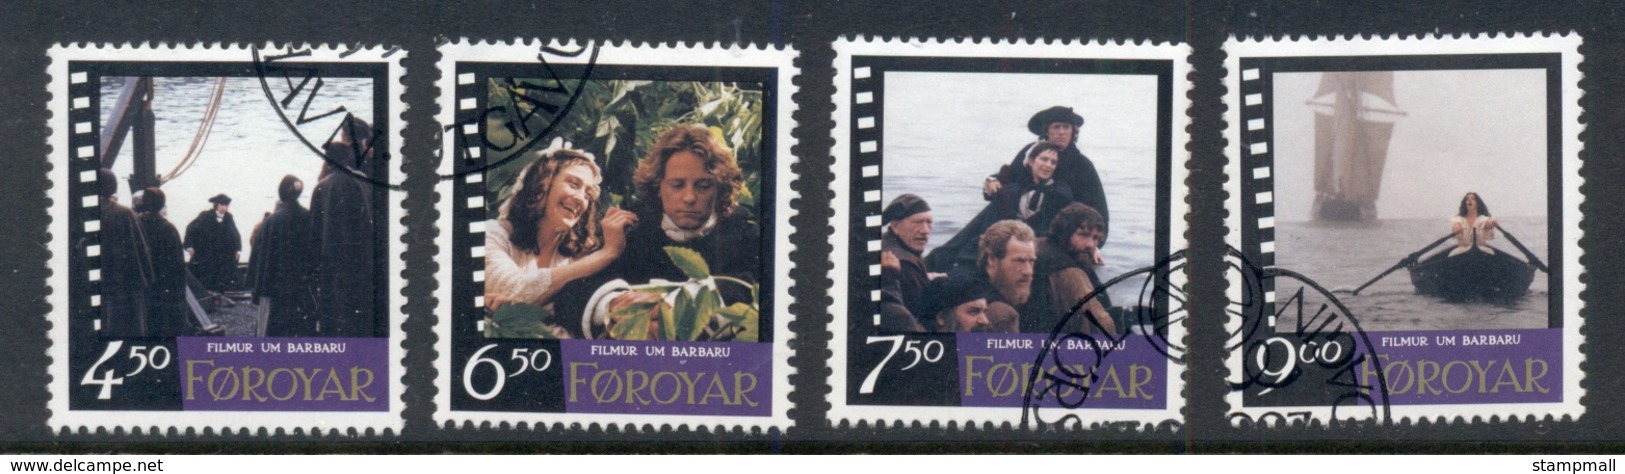 Faroe Is 1997 Cinema, Film Barbara FU - Unused Stamps